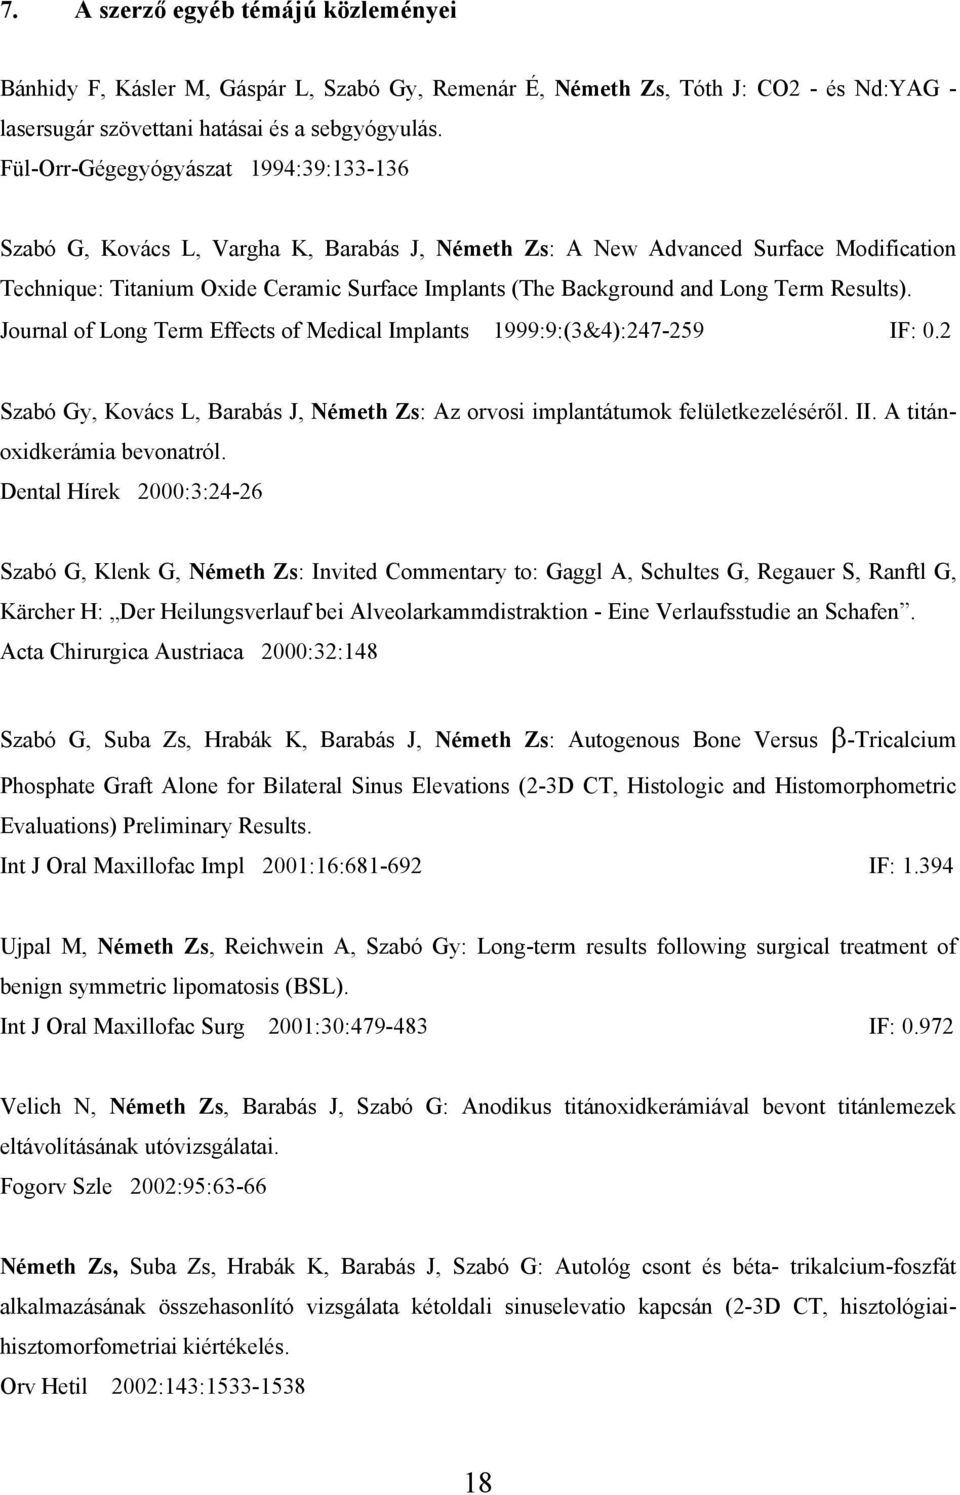 Long Term Results). Journal of Long Term Effects of Medical Implants 1999:9:(3&4):247-259 IF: 0.2 Szabó Gy, Kovács L, Barabás J, Németh Zs: Az orvosi implantátumok felületkezeléséről. II.